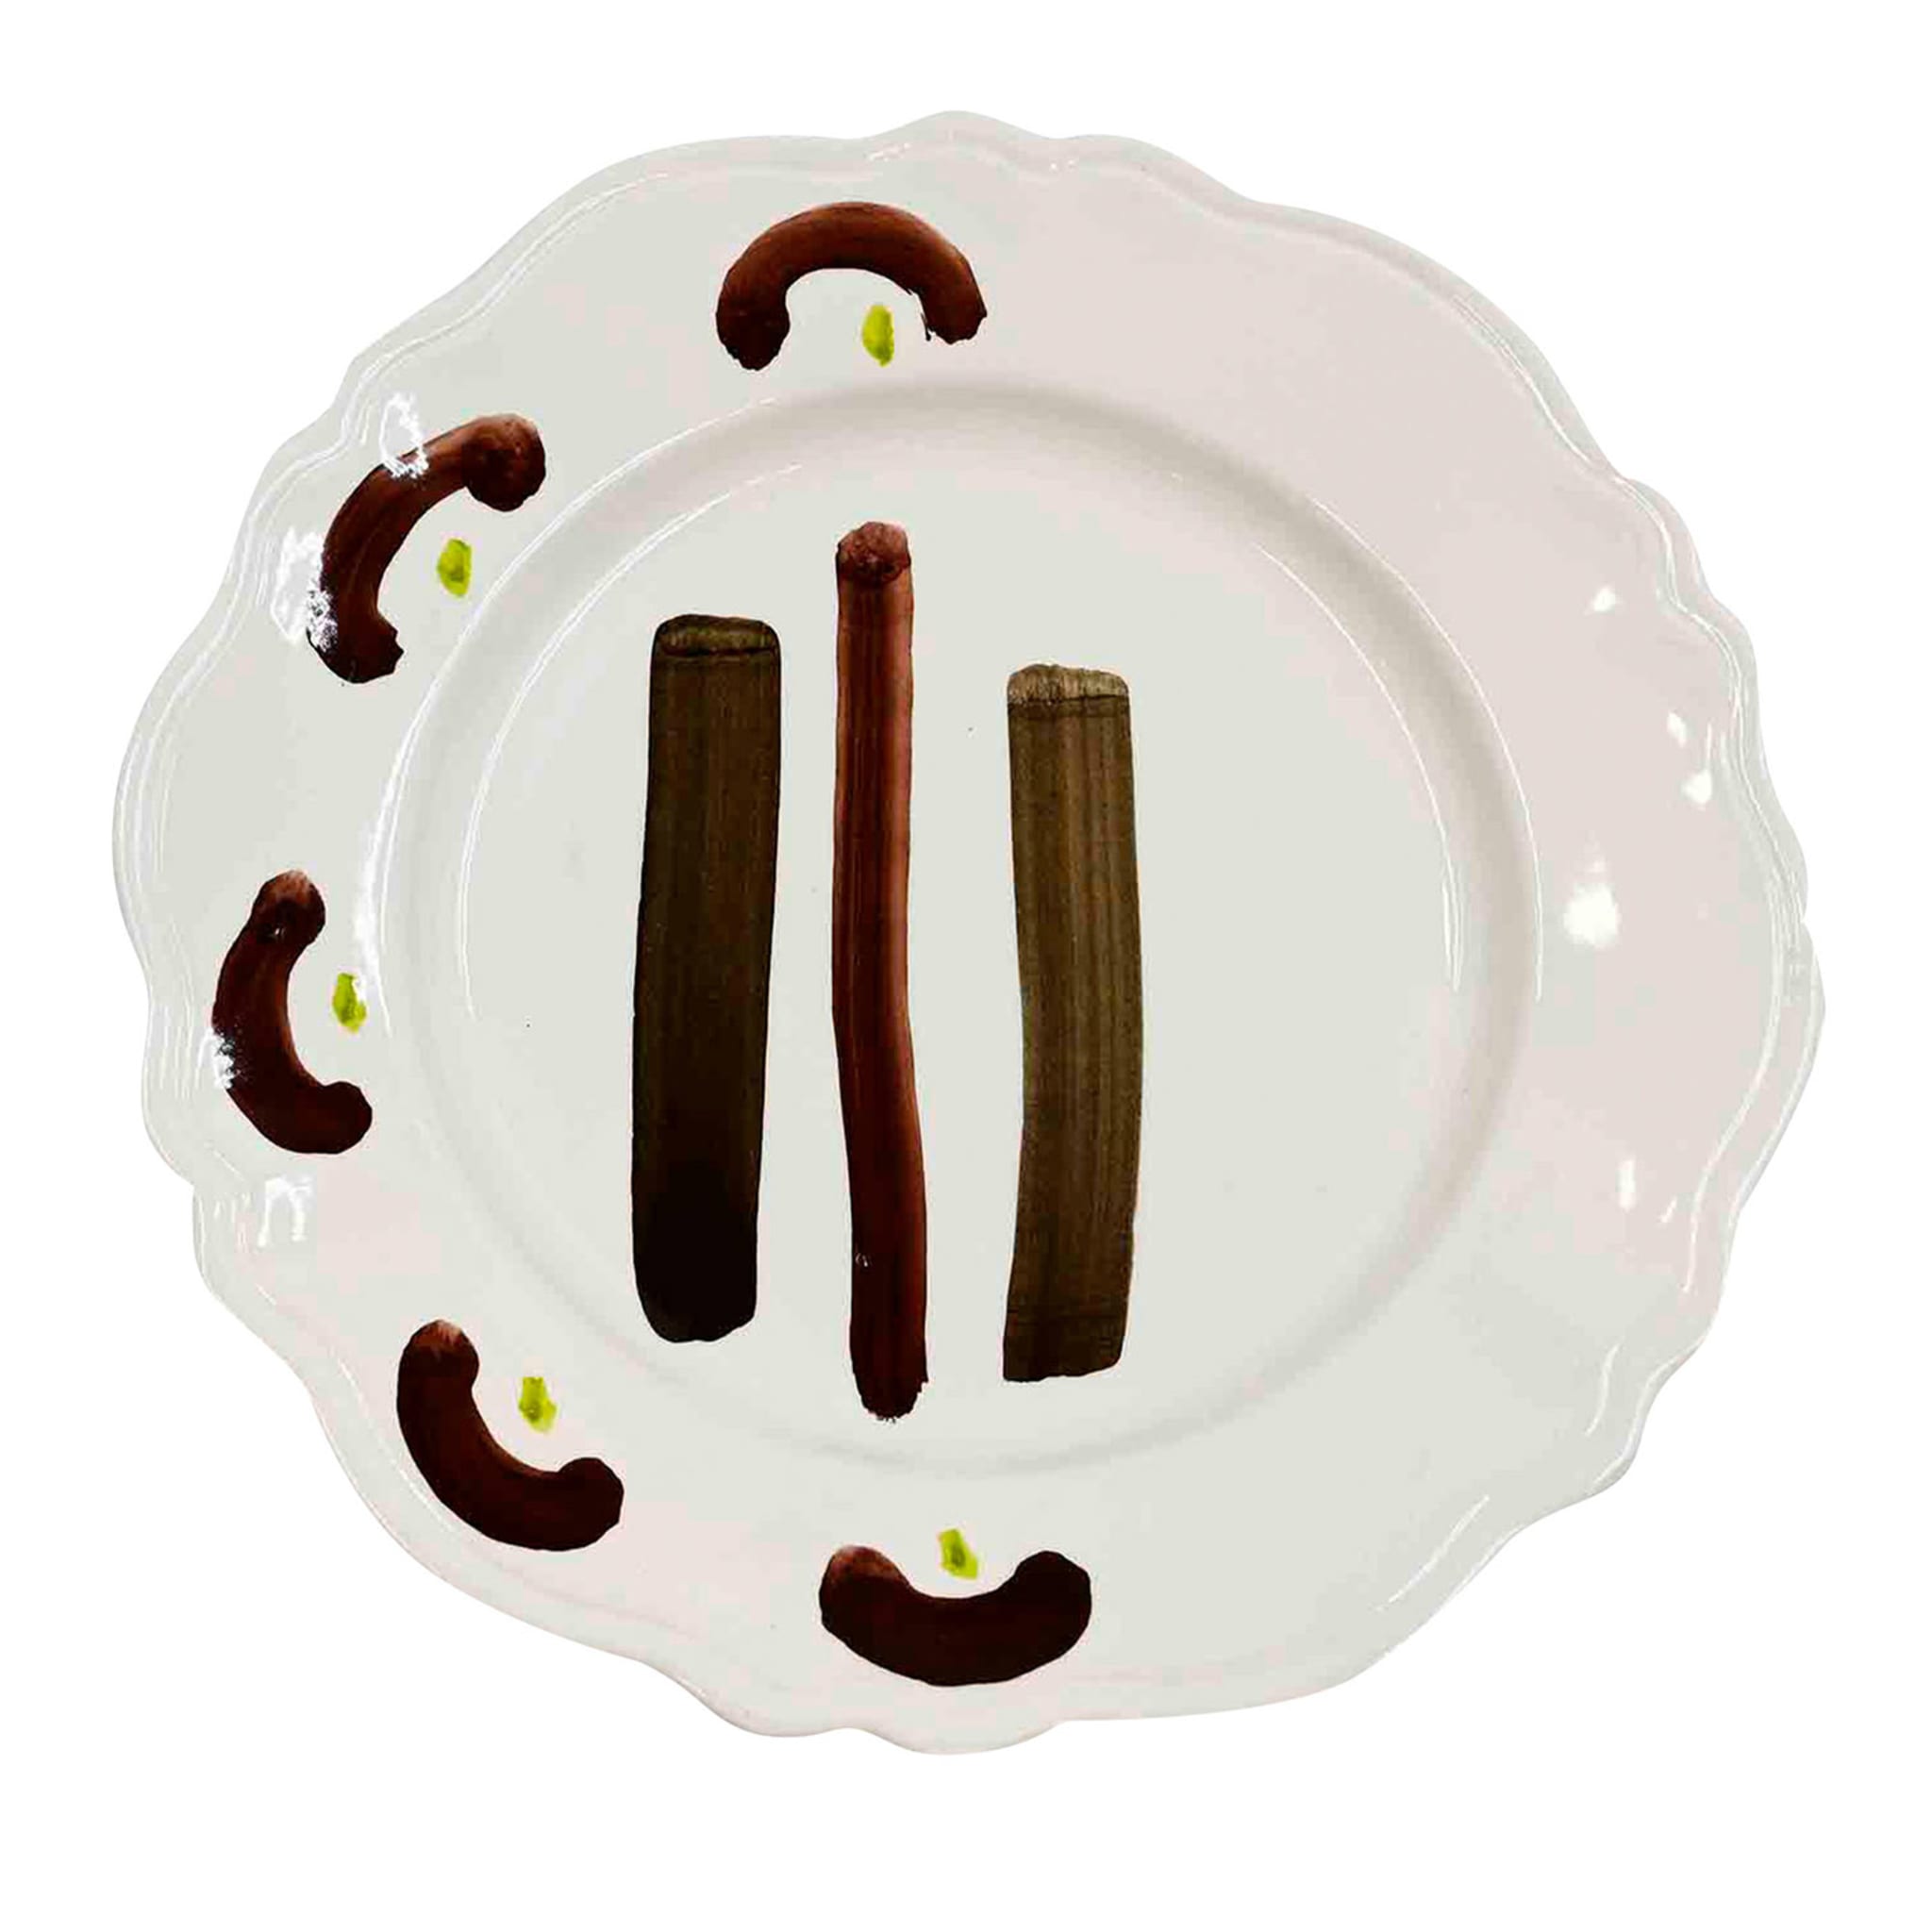 Handcrafted Premium Italian Ceramic Plate